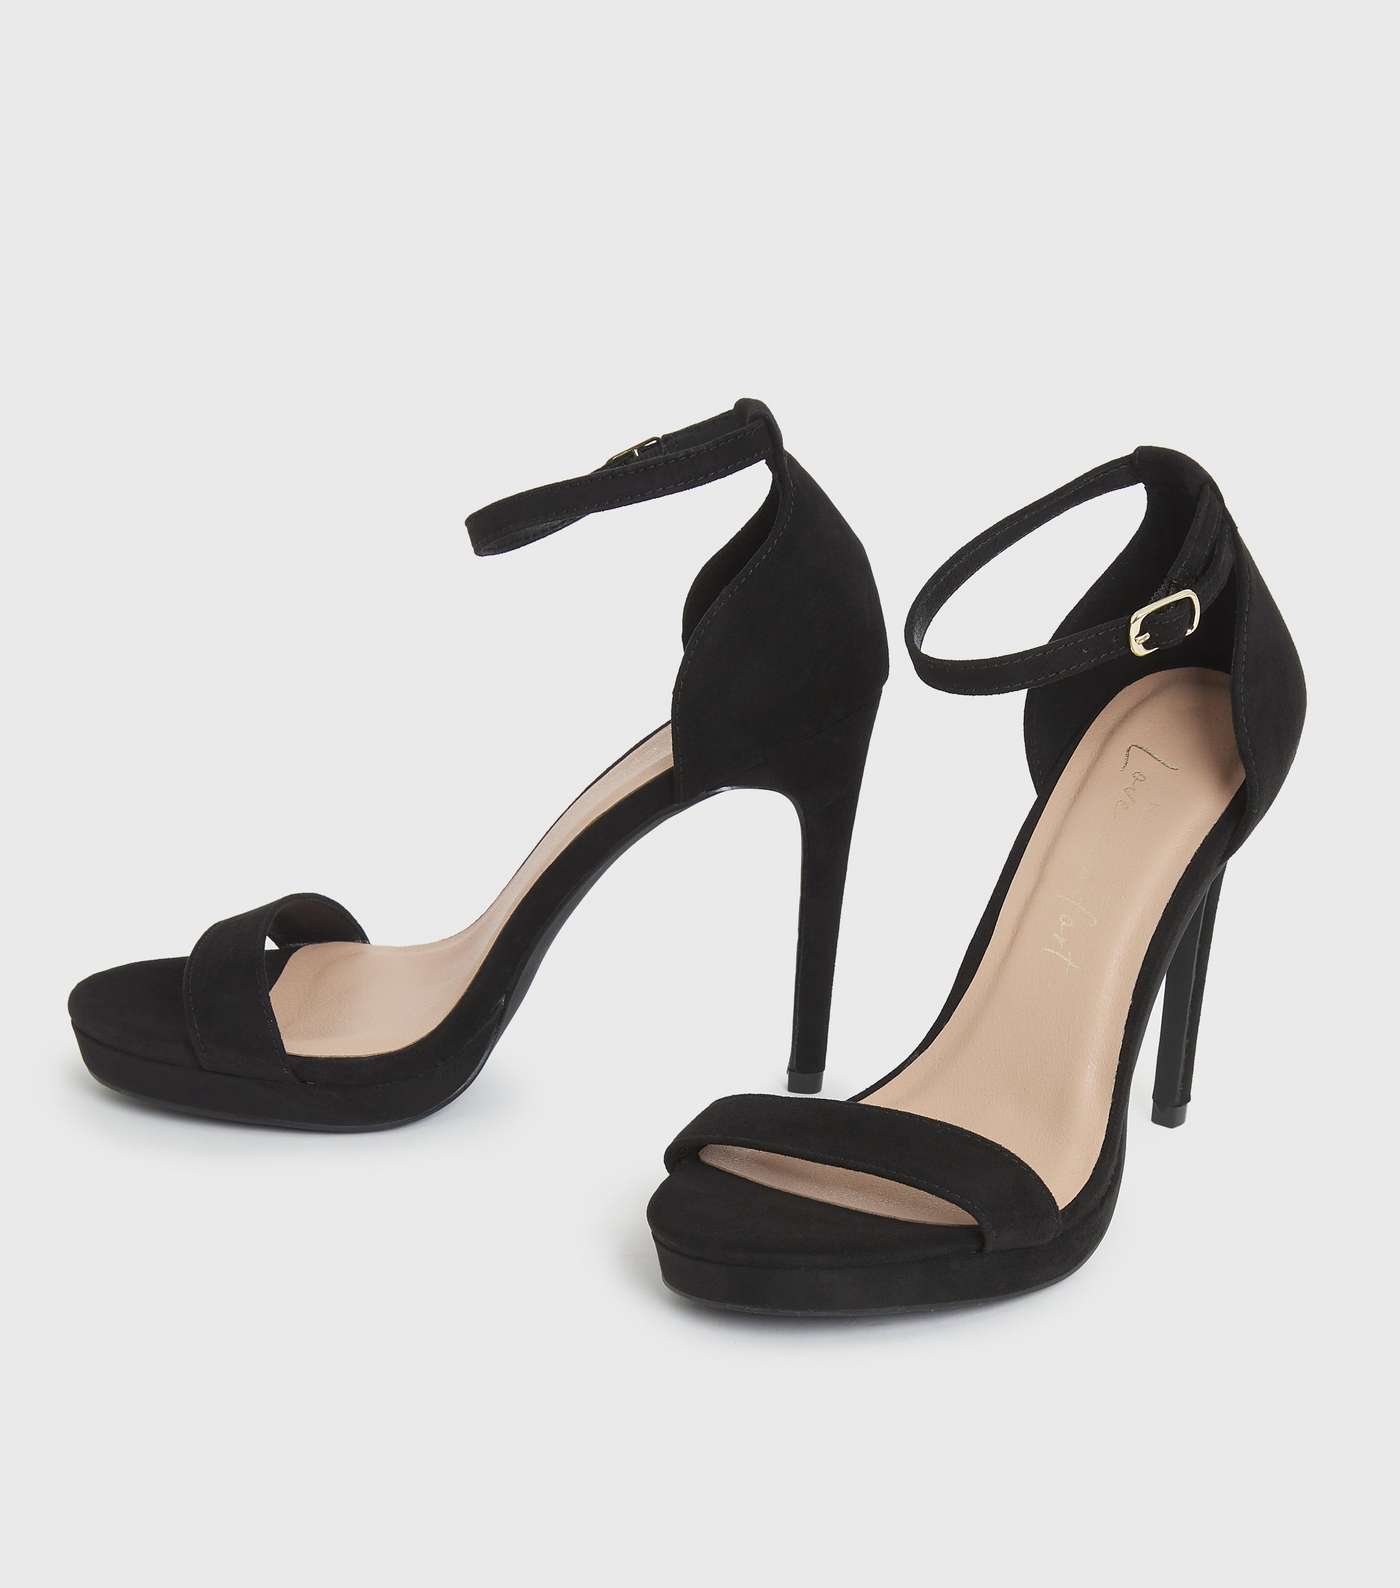 Black Suedette Platform Stiletto Heel Sandals Image 3